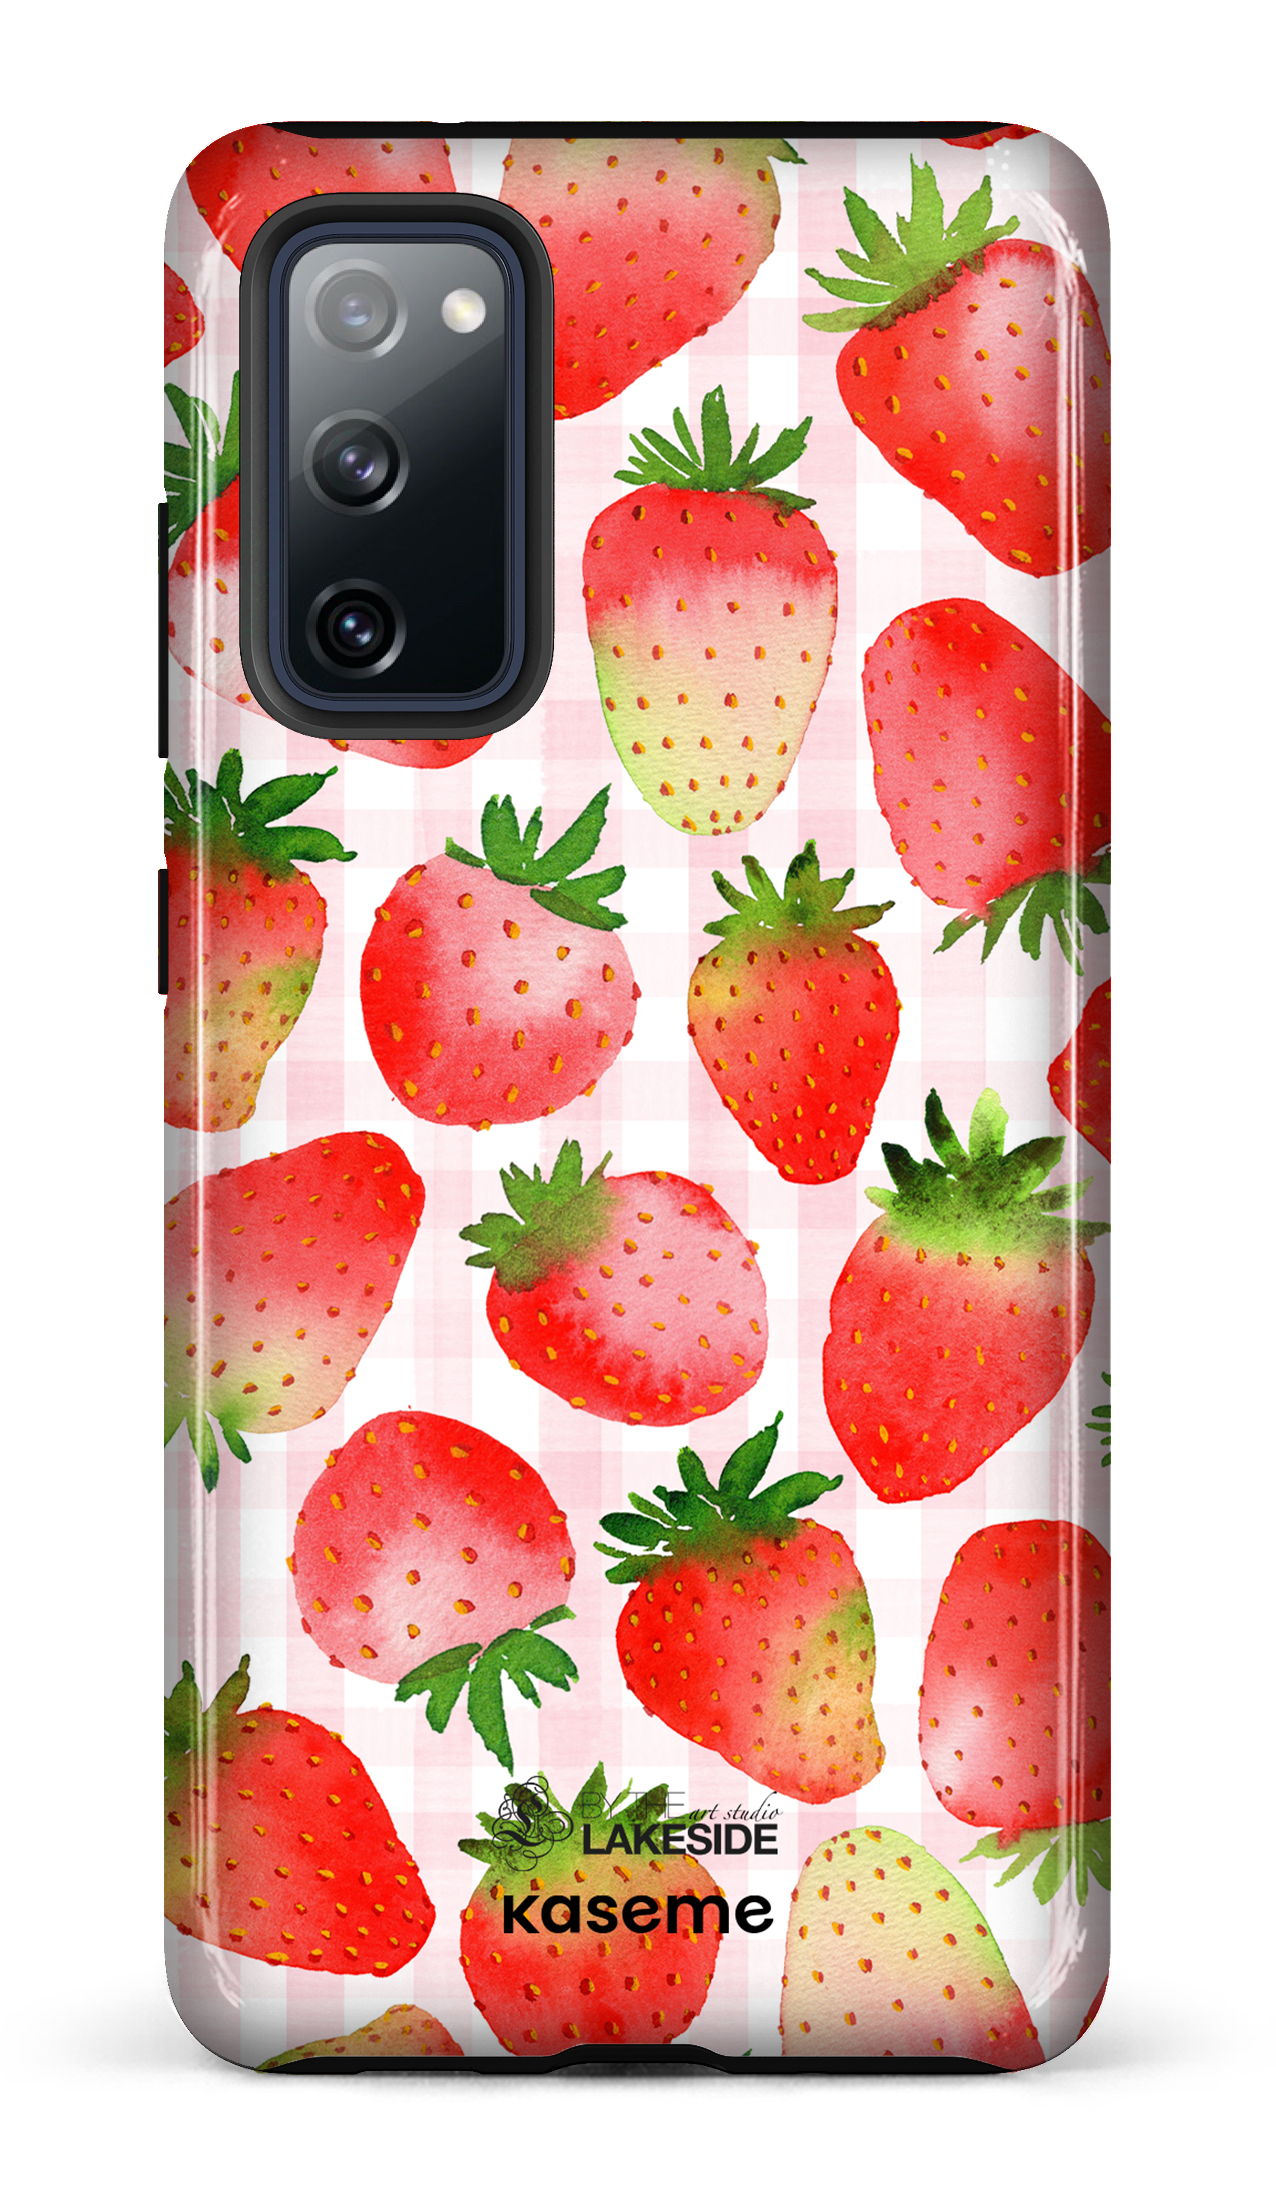 Strawberry Fields by Pooja Umrani - Galaxy S20 FE